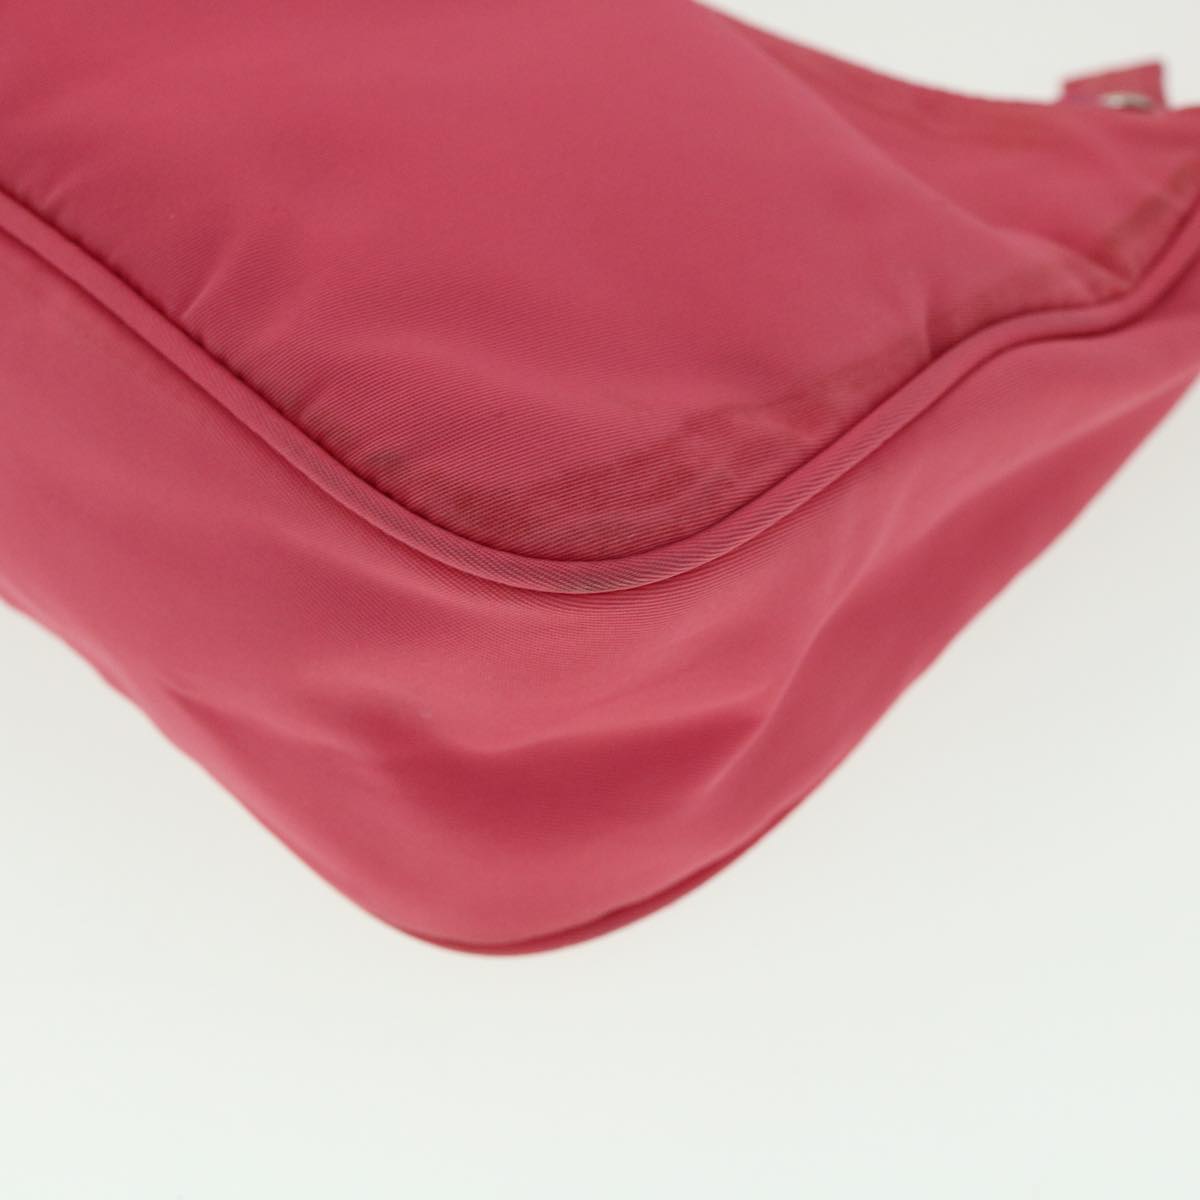 PRADA Hand Bag Nylon Pink Auth yk4885